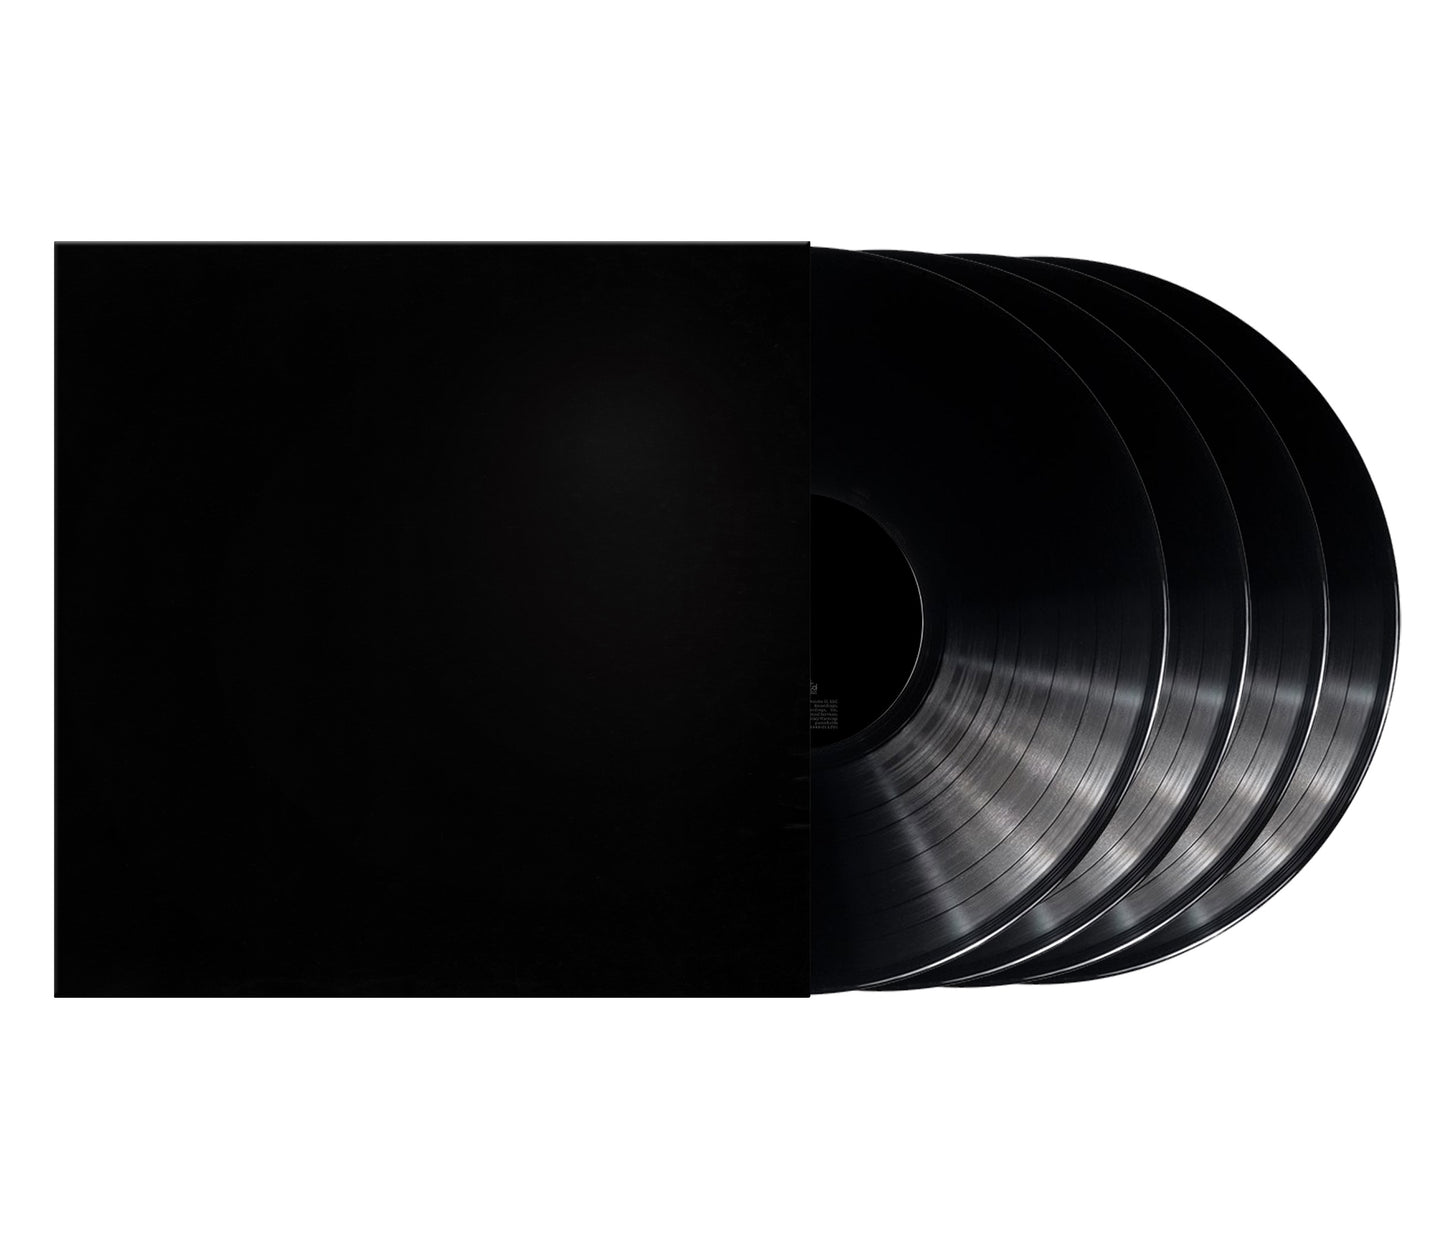 Kanye West Donda [Explicit Content] (Boxed Set, Deluxe Edition) (4 Lp's) | Vinyl